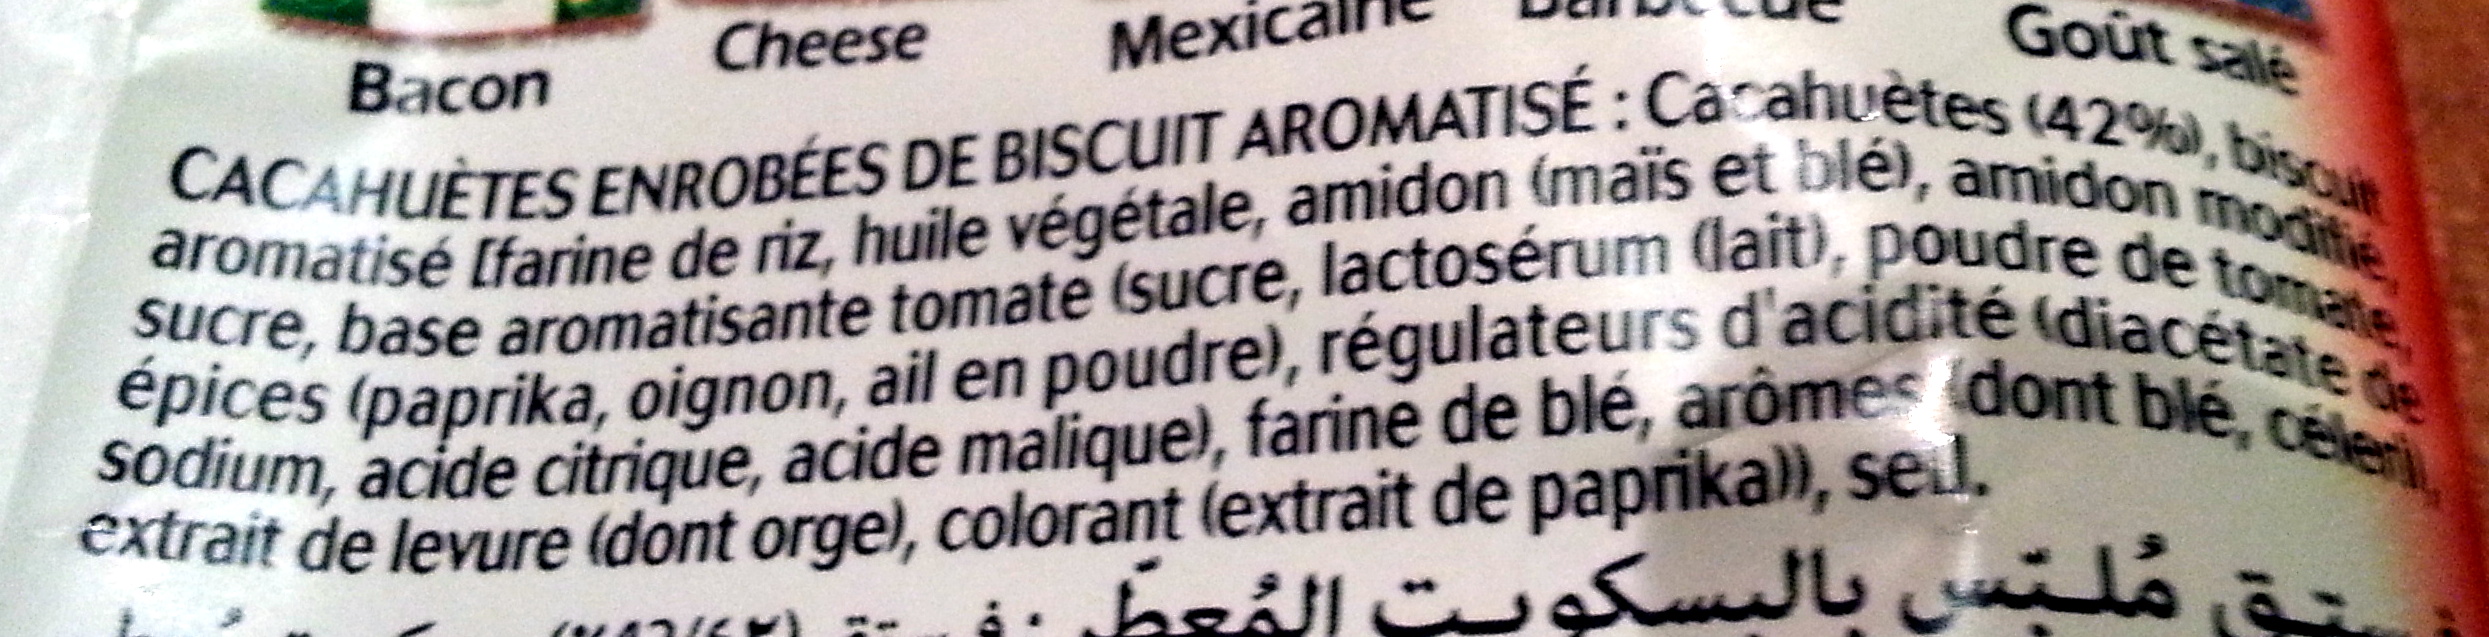 Twinuts goût tomate - Ingredients - fr